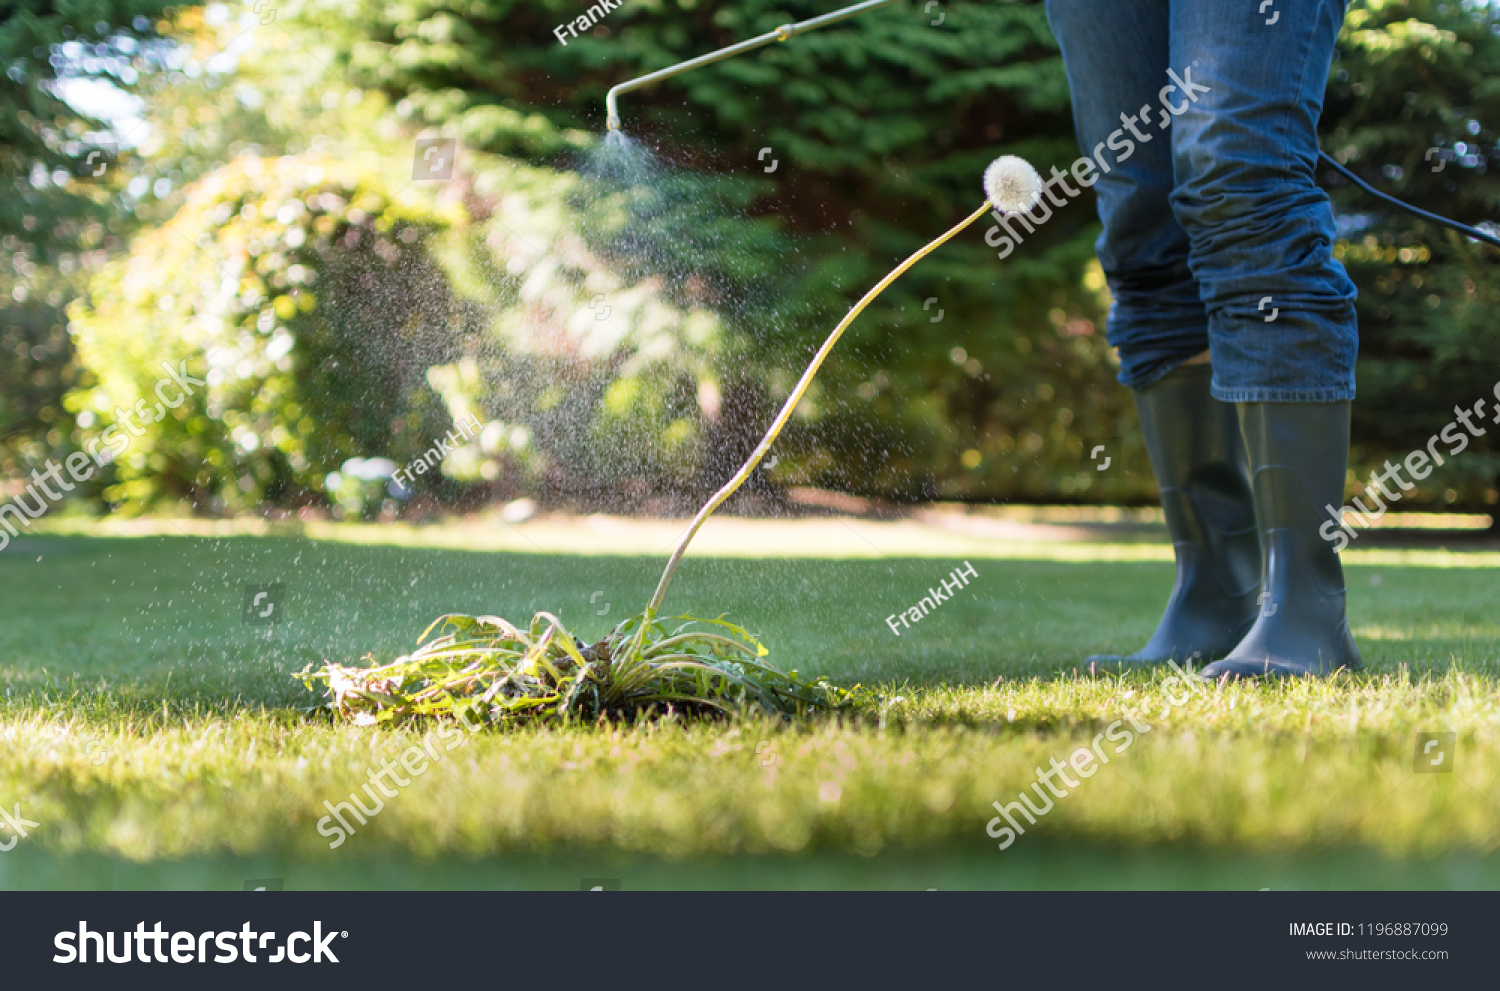 Spraying weeds in the garden #1196887099